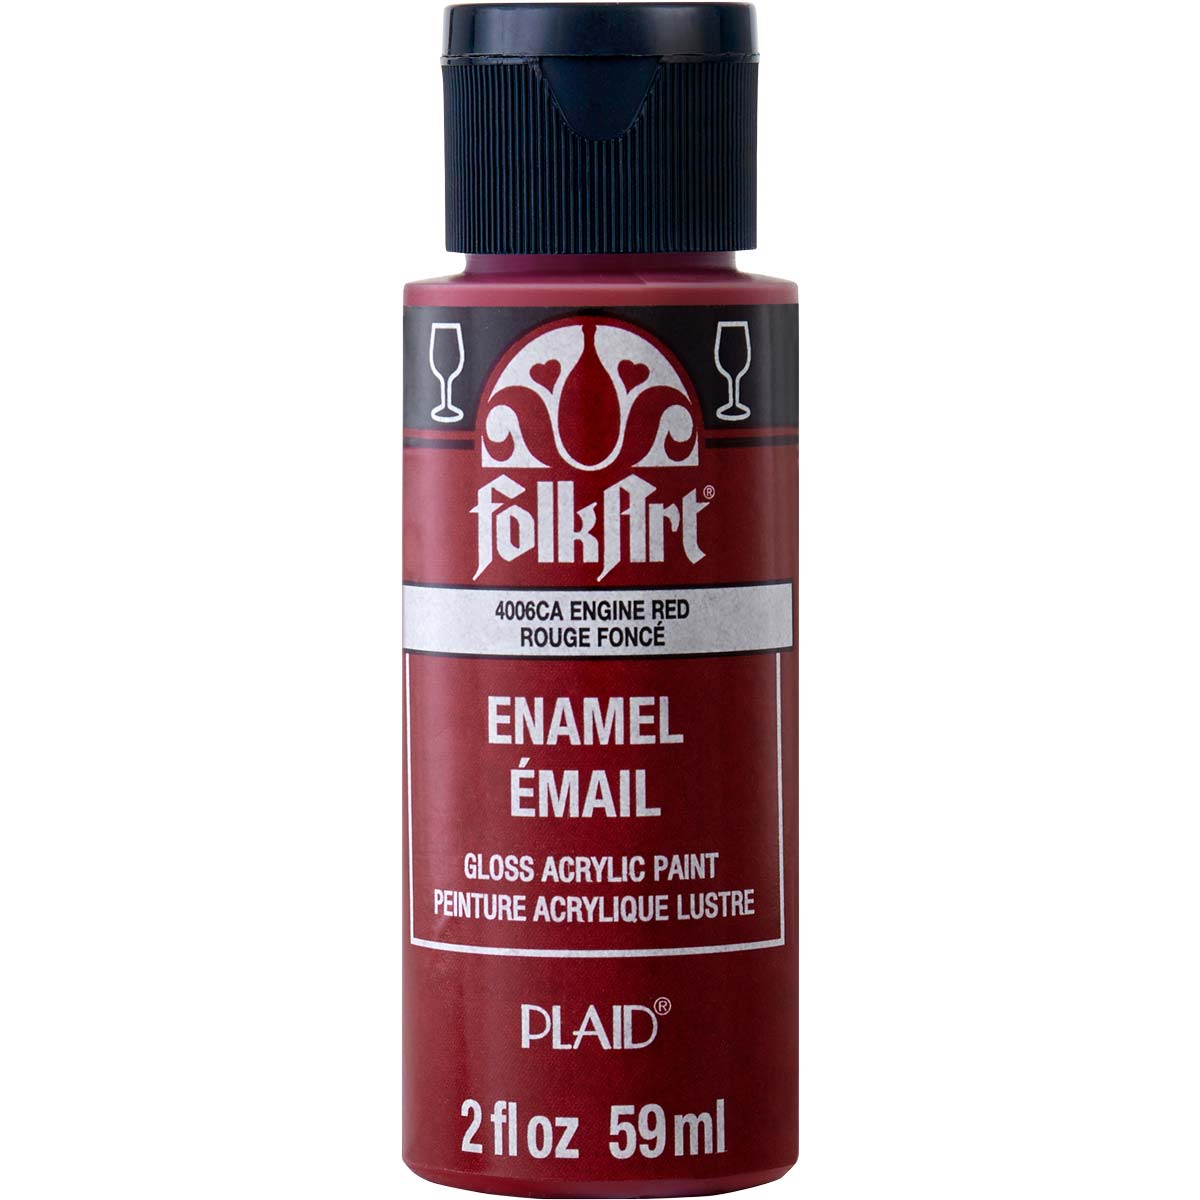 FolkArt ® Enamels™ - Engine Red, 2 oz. - 4006